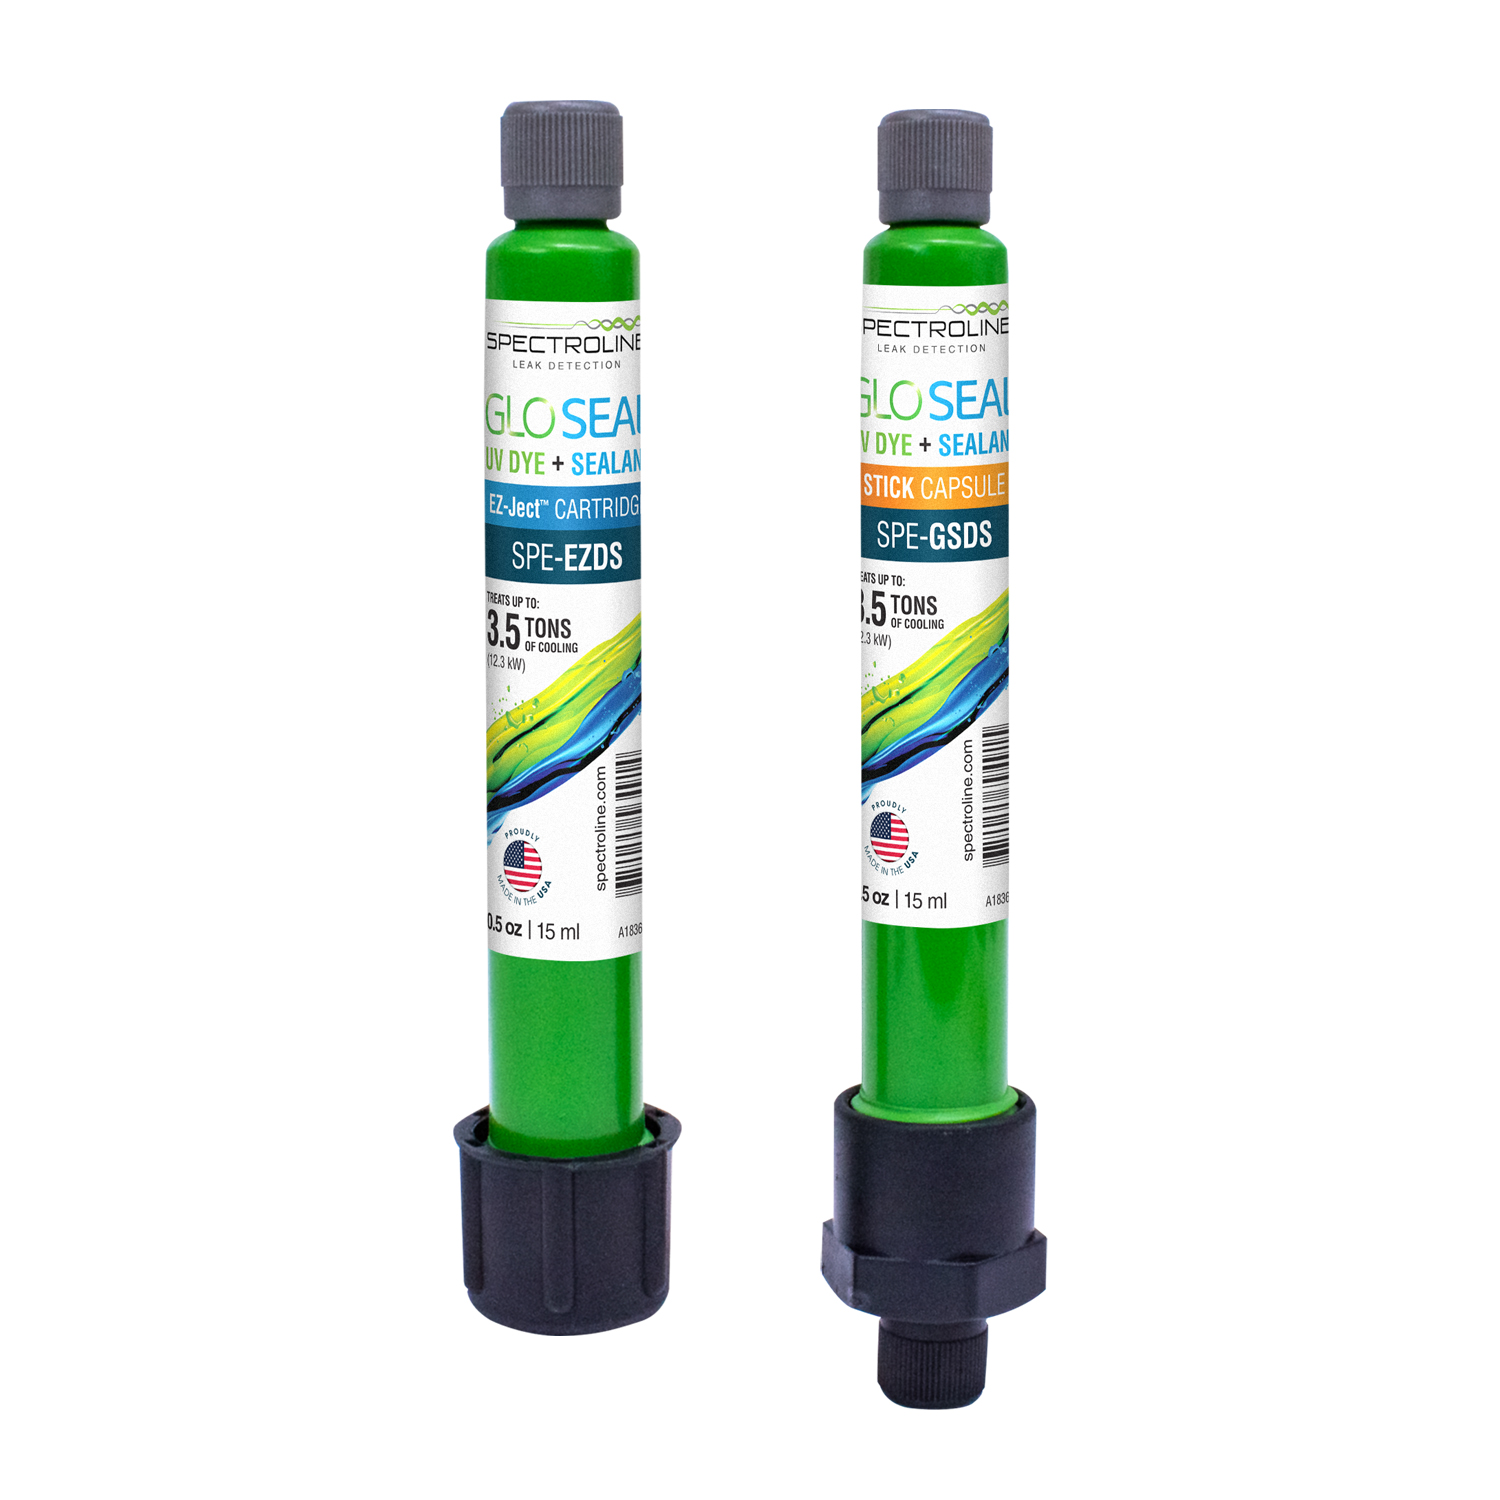 GLO Seal Spritzeninjektor und Doppeladapter - Spectroline